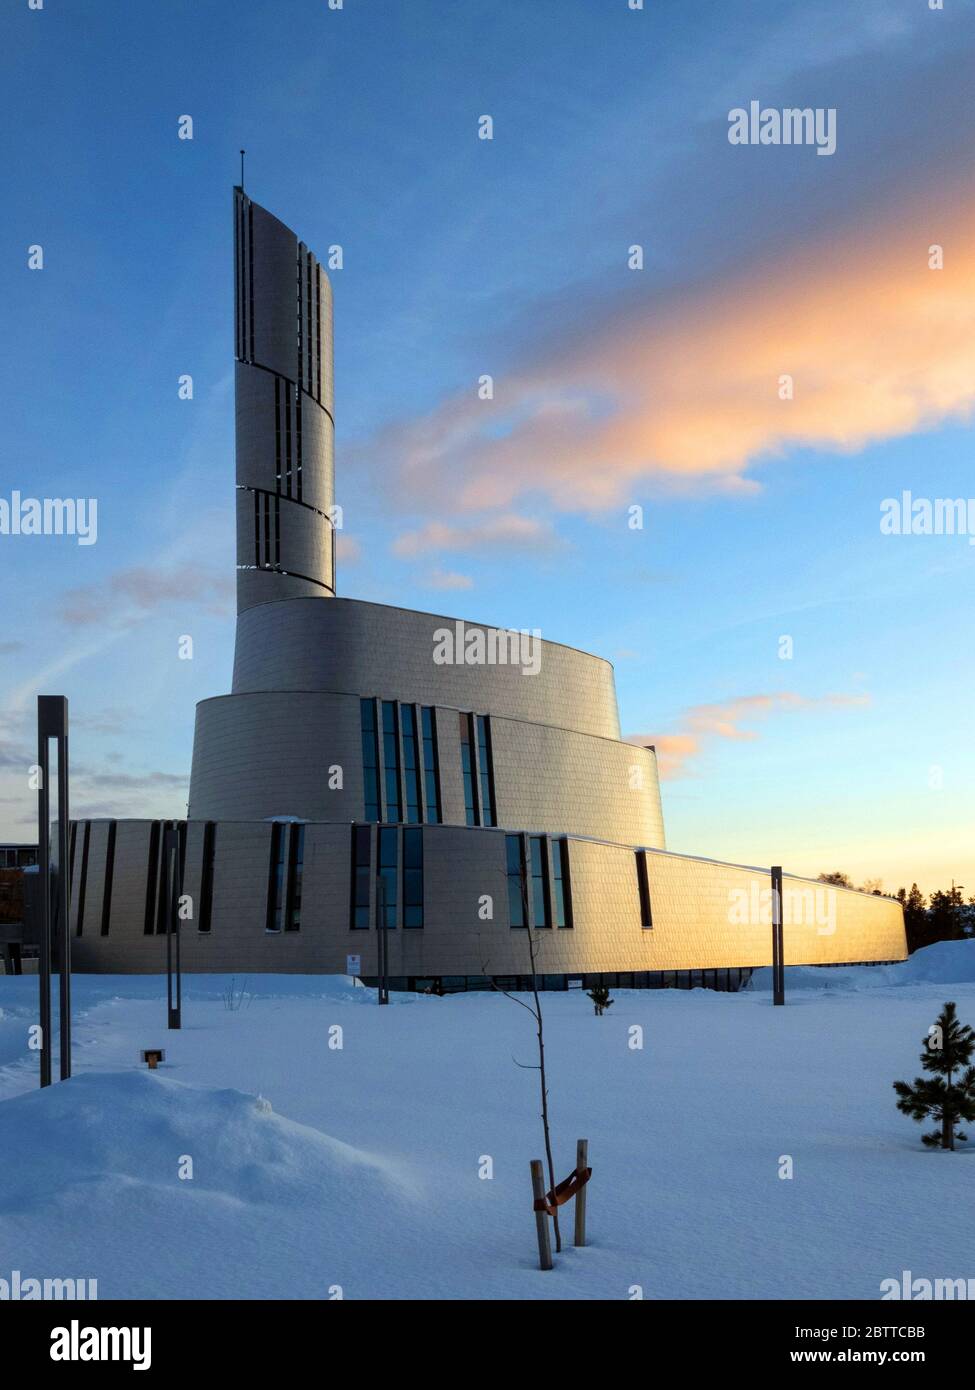 Die Nordlichtkathedrale, oder auch Alta-Kirche, ist die größte Kirche der nordnorwegischen Stadt Alta und wurde von2011 bis 2013 erbaut. Banque D'Images